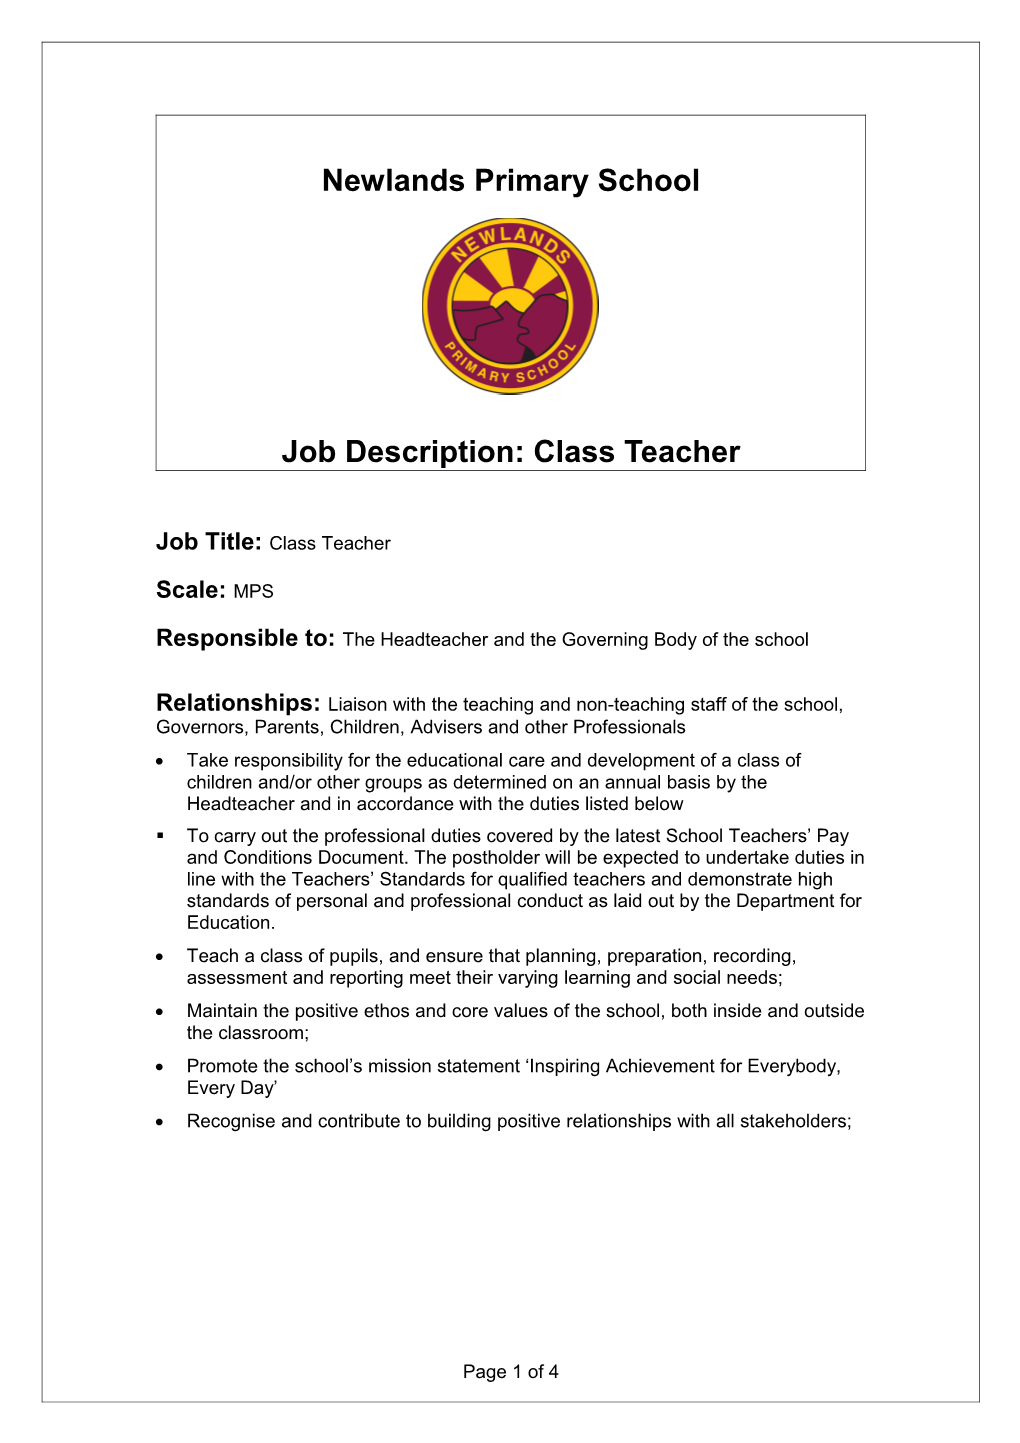 Job Specification for a Class Teacher